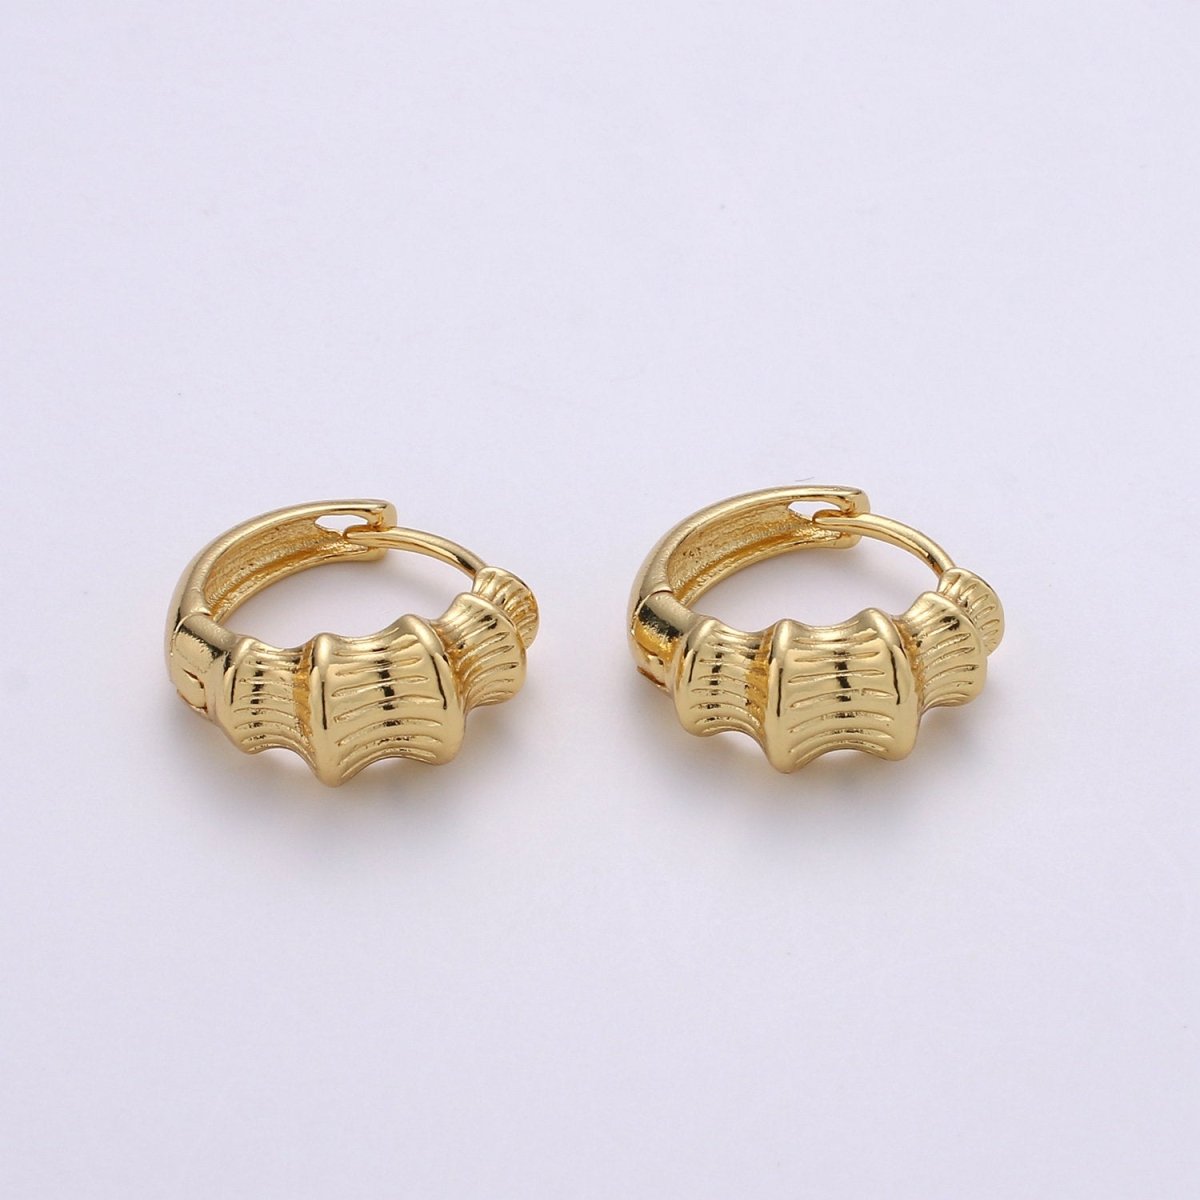 24k Vermeil Gold Earrings, Huggie Earring, Dainty Earrings, Chunky Bamboo Earrings, Everyday Wear Earrings 15mm Earring Q-118 - DLUXCA